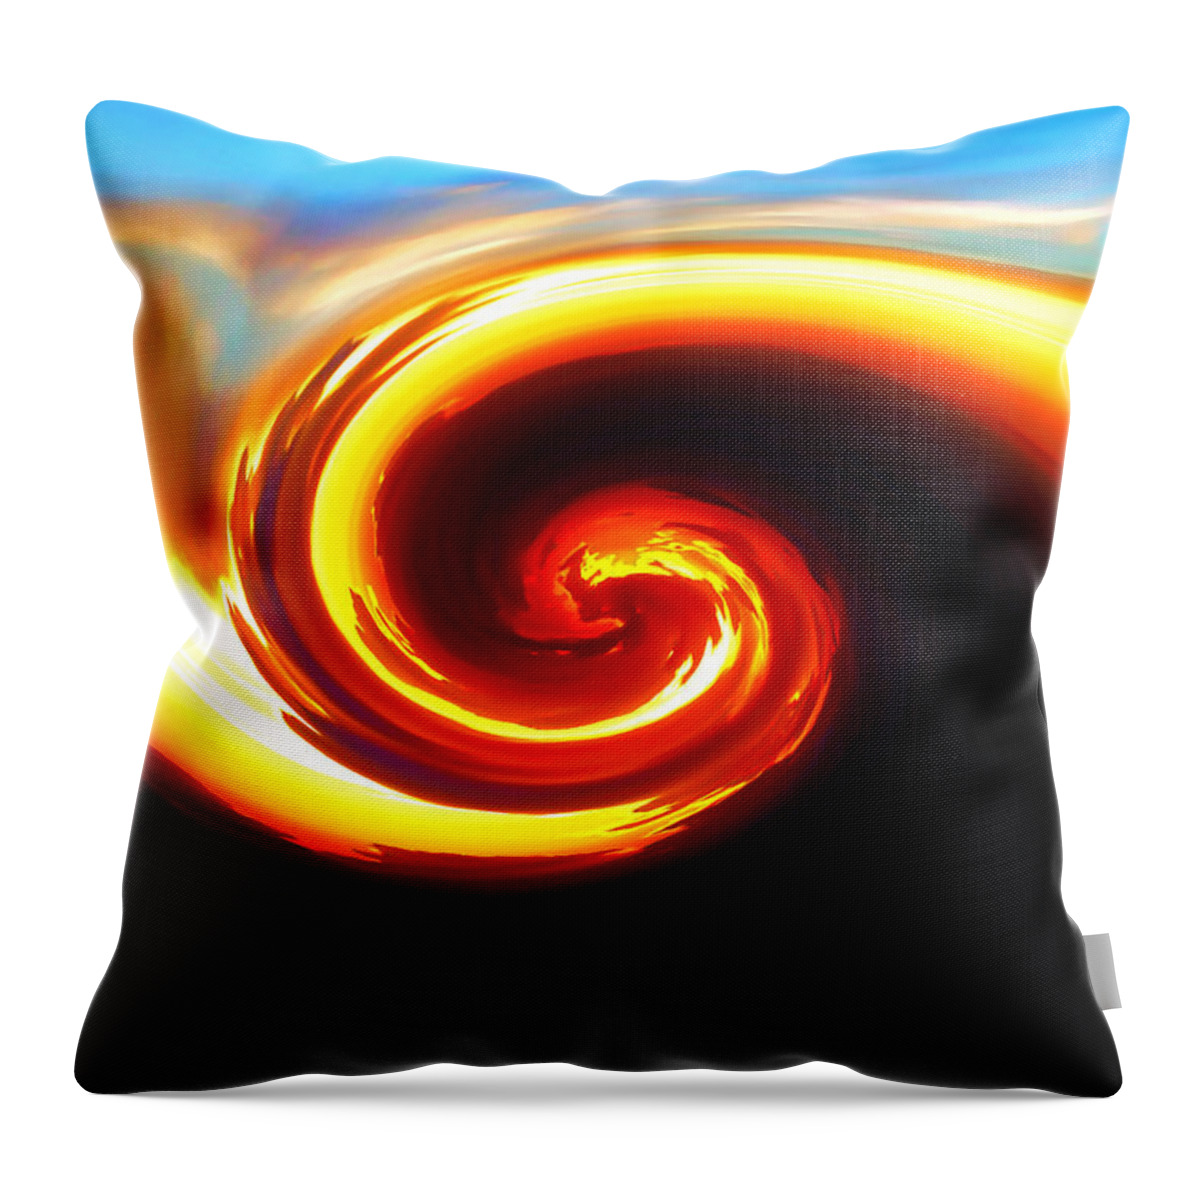 Art Throw Pillow featuring the digital art Siren by Kristin Elmquist